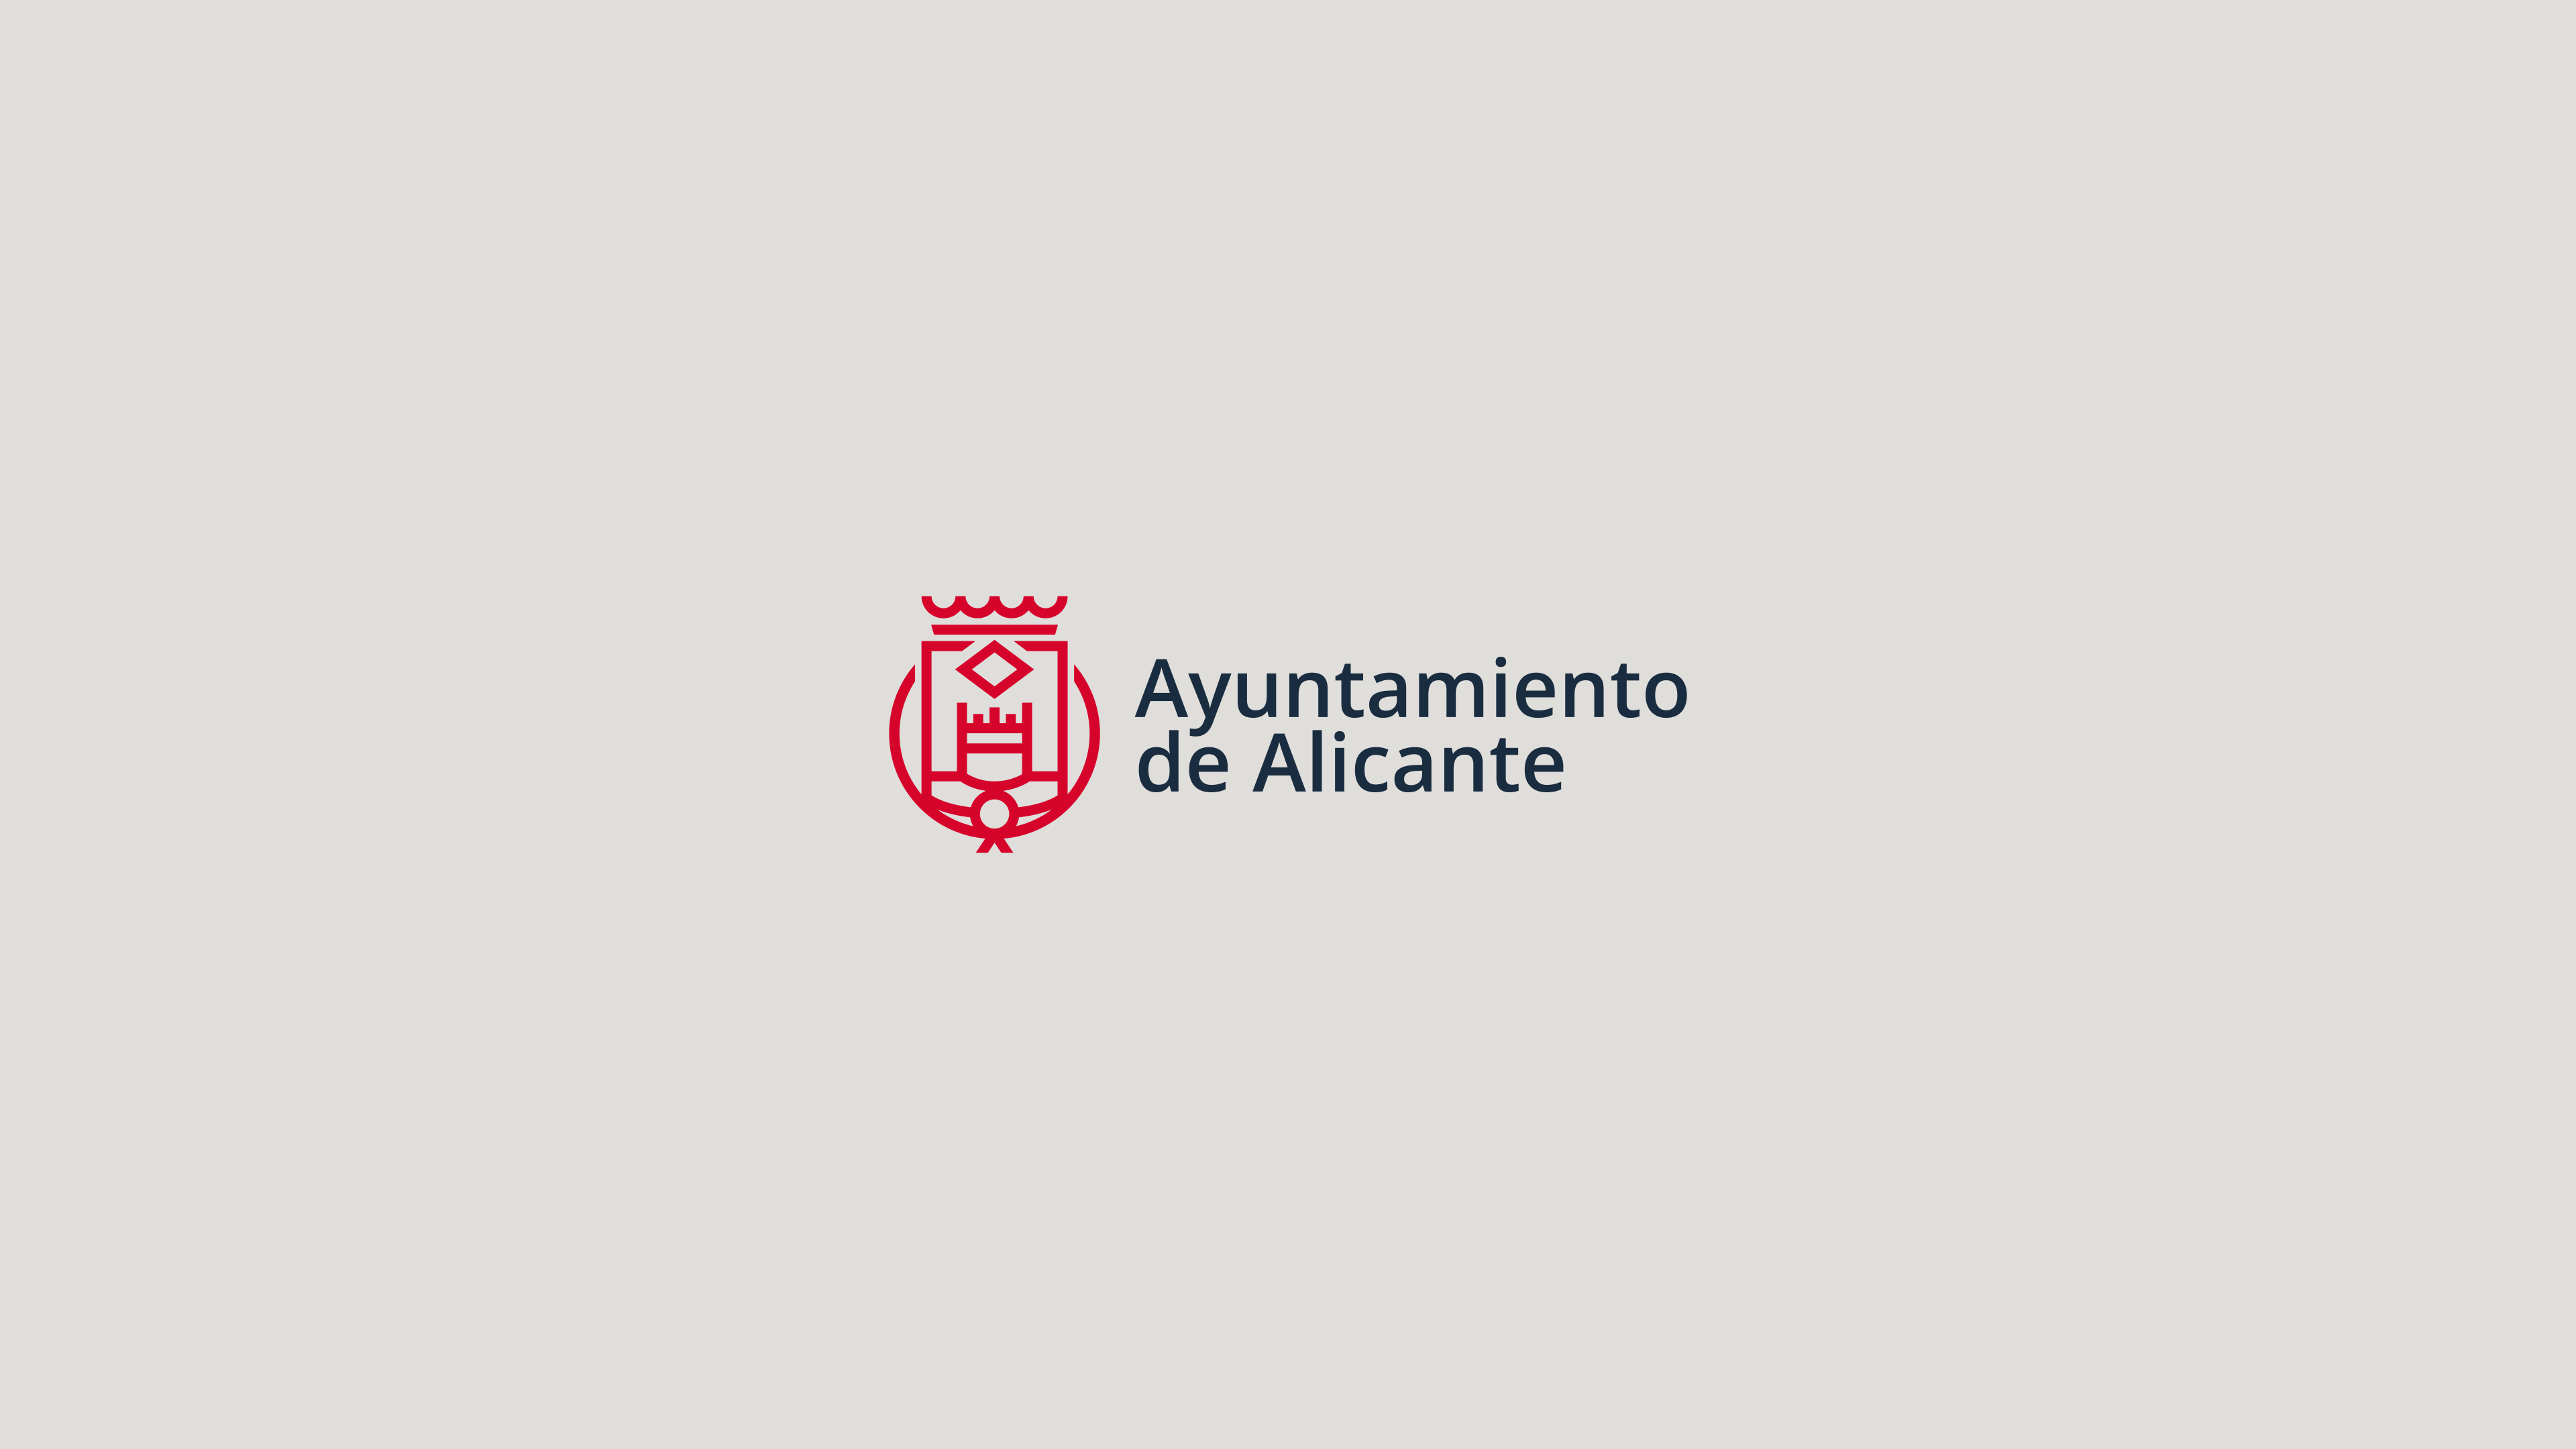 INUQ Estudio Diseño de logotipos en Elche y Alicante Branding Ayuntamiento de Alicante logotipo